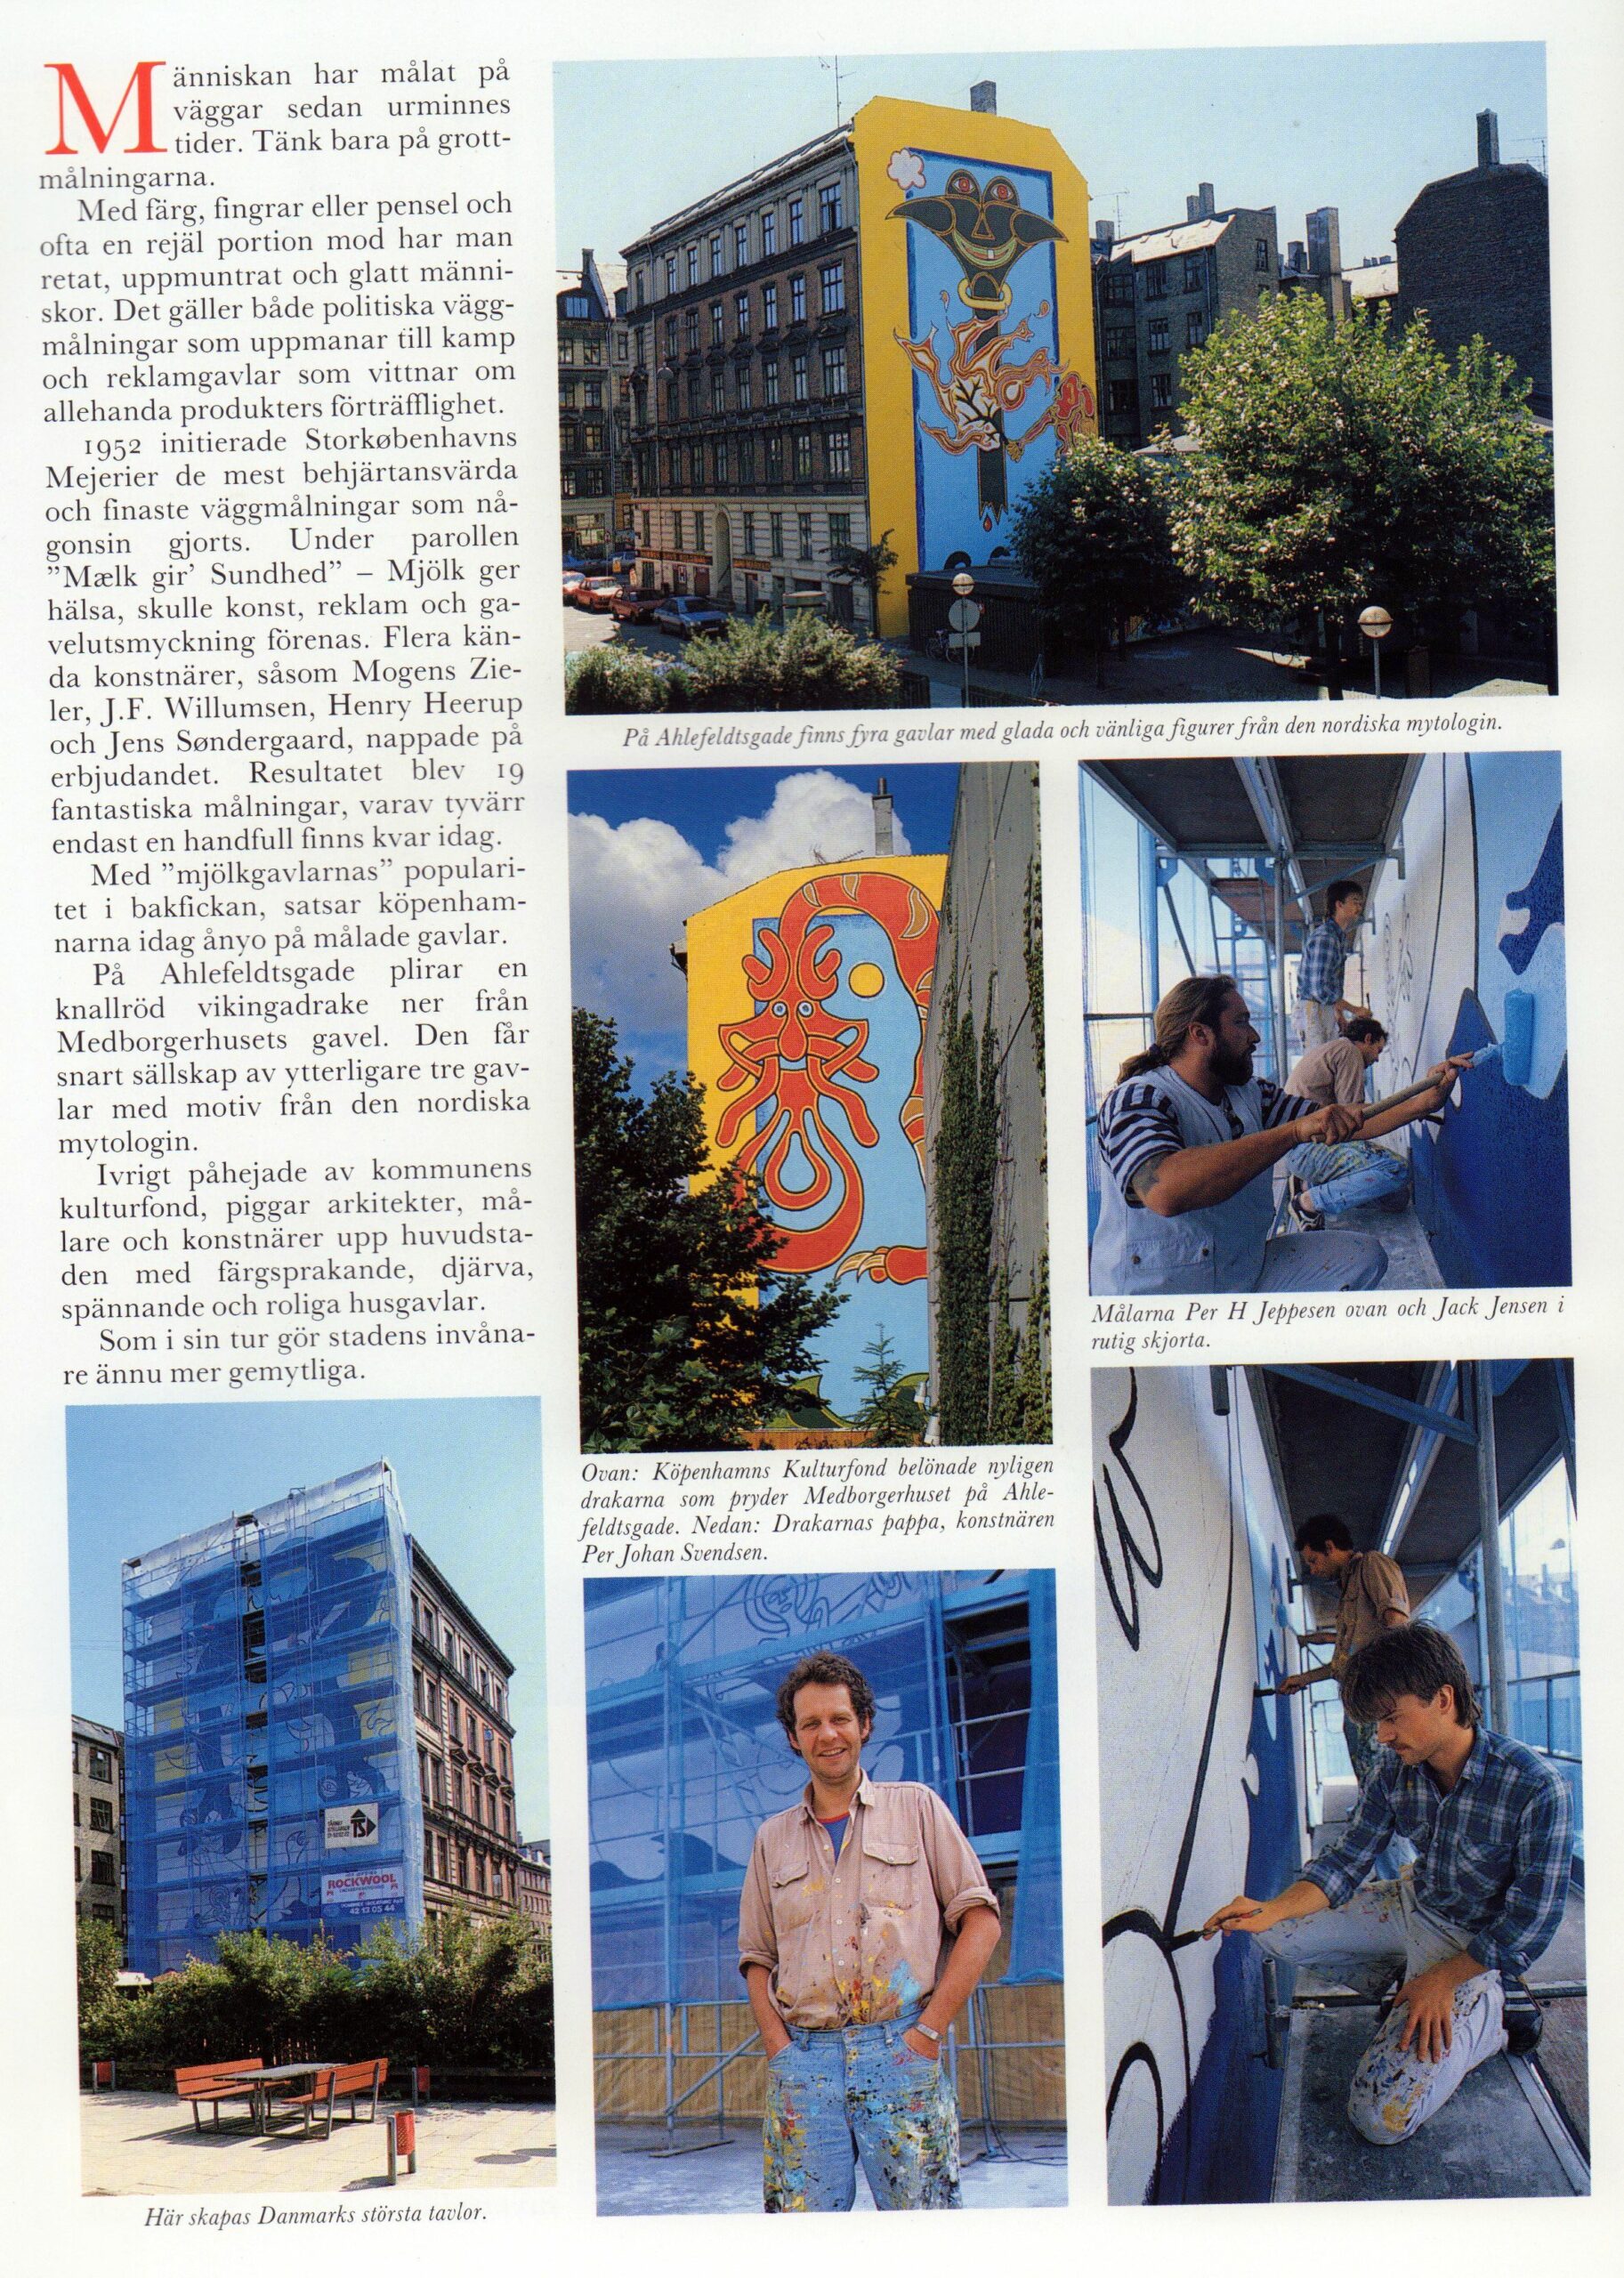 Människan har målat på väggar sedan urminnes tider. Omtale (Gæstfrihedens Plads. Ahlefeldtsgade, København). Nordsjö Bladet. Primo juni 1989.